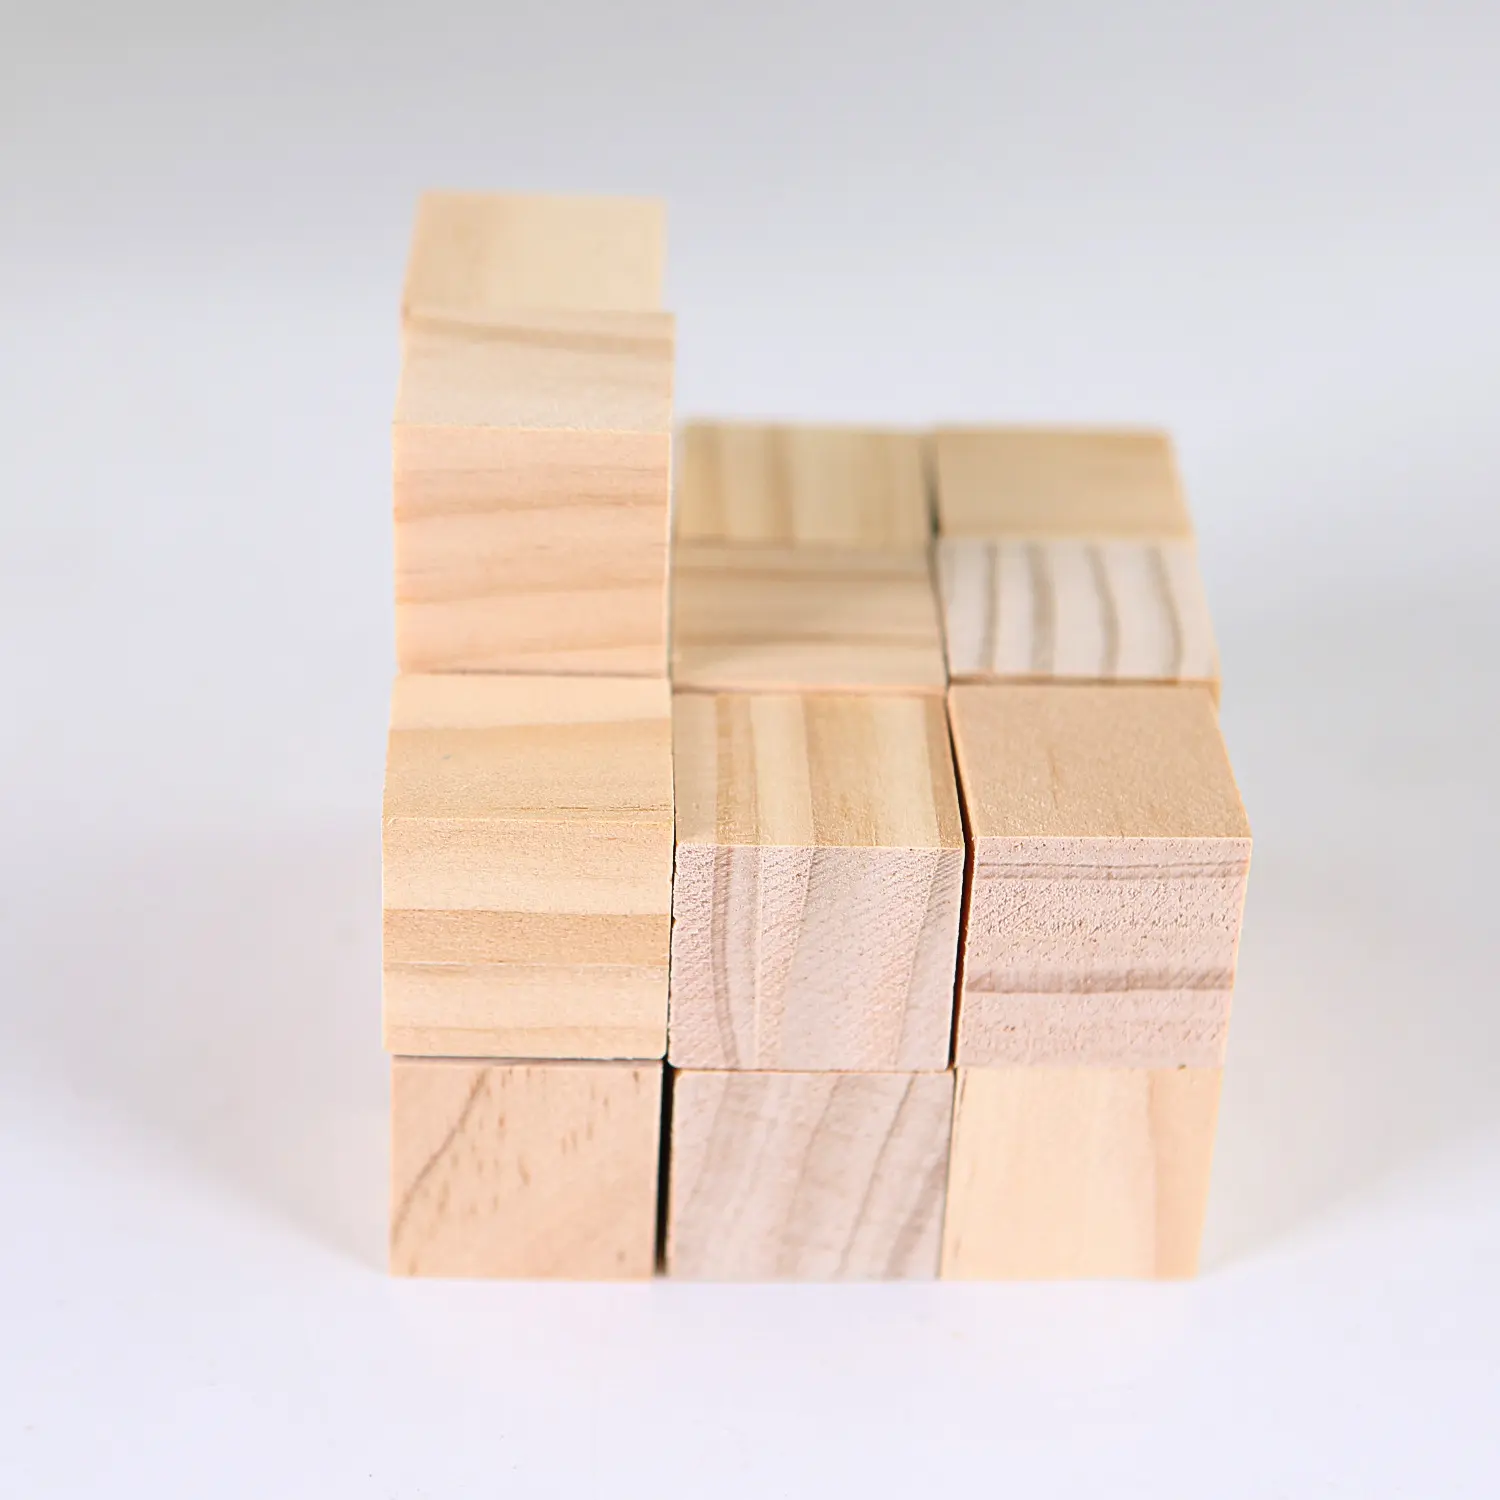 정사각형 볼륨 블록 수학 교재 2cm 정사각형 어린이 교육용 입체 조립 빌딩 블록 장난감